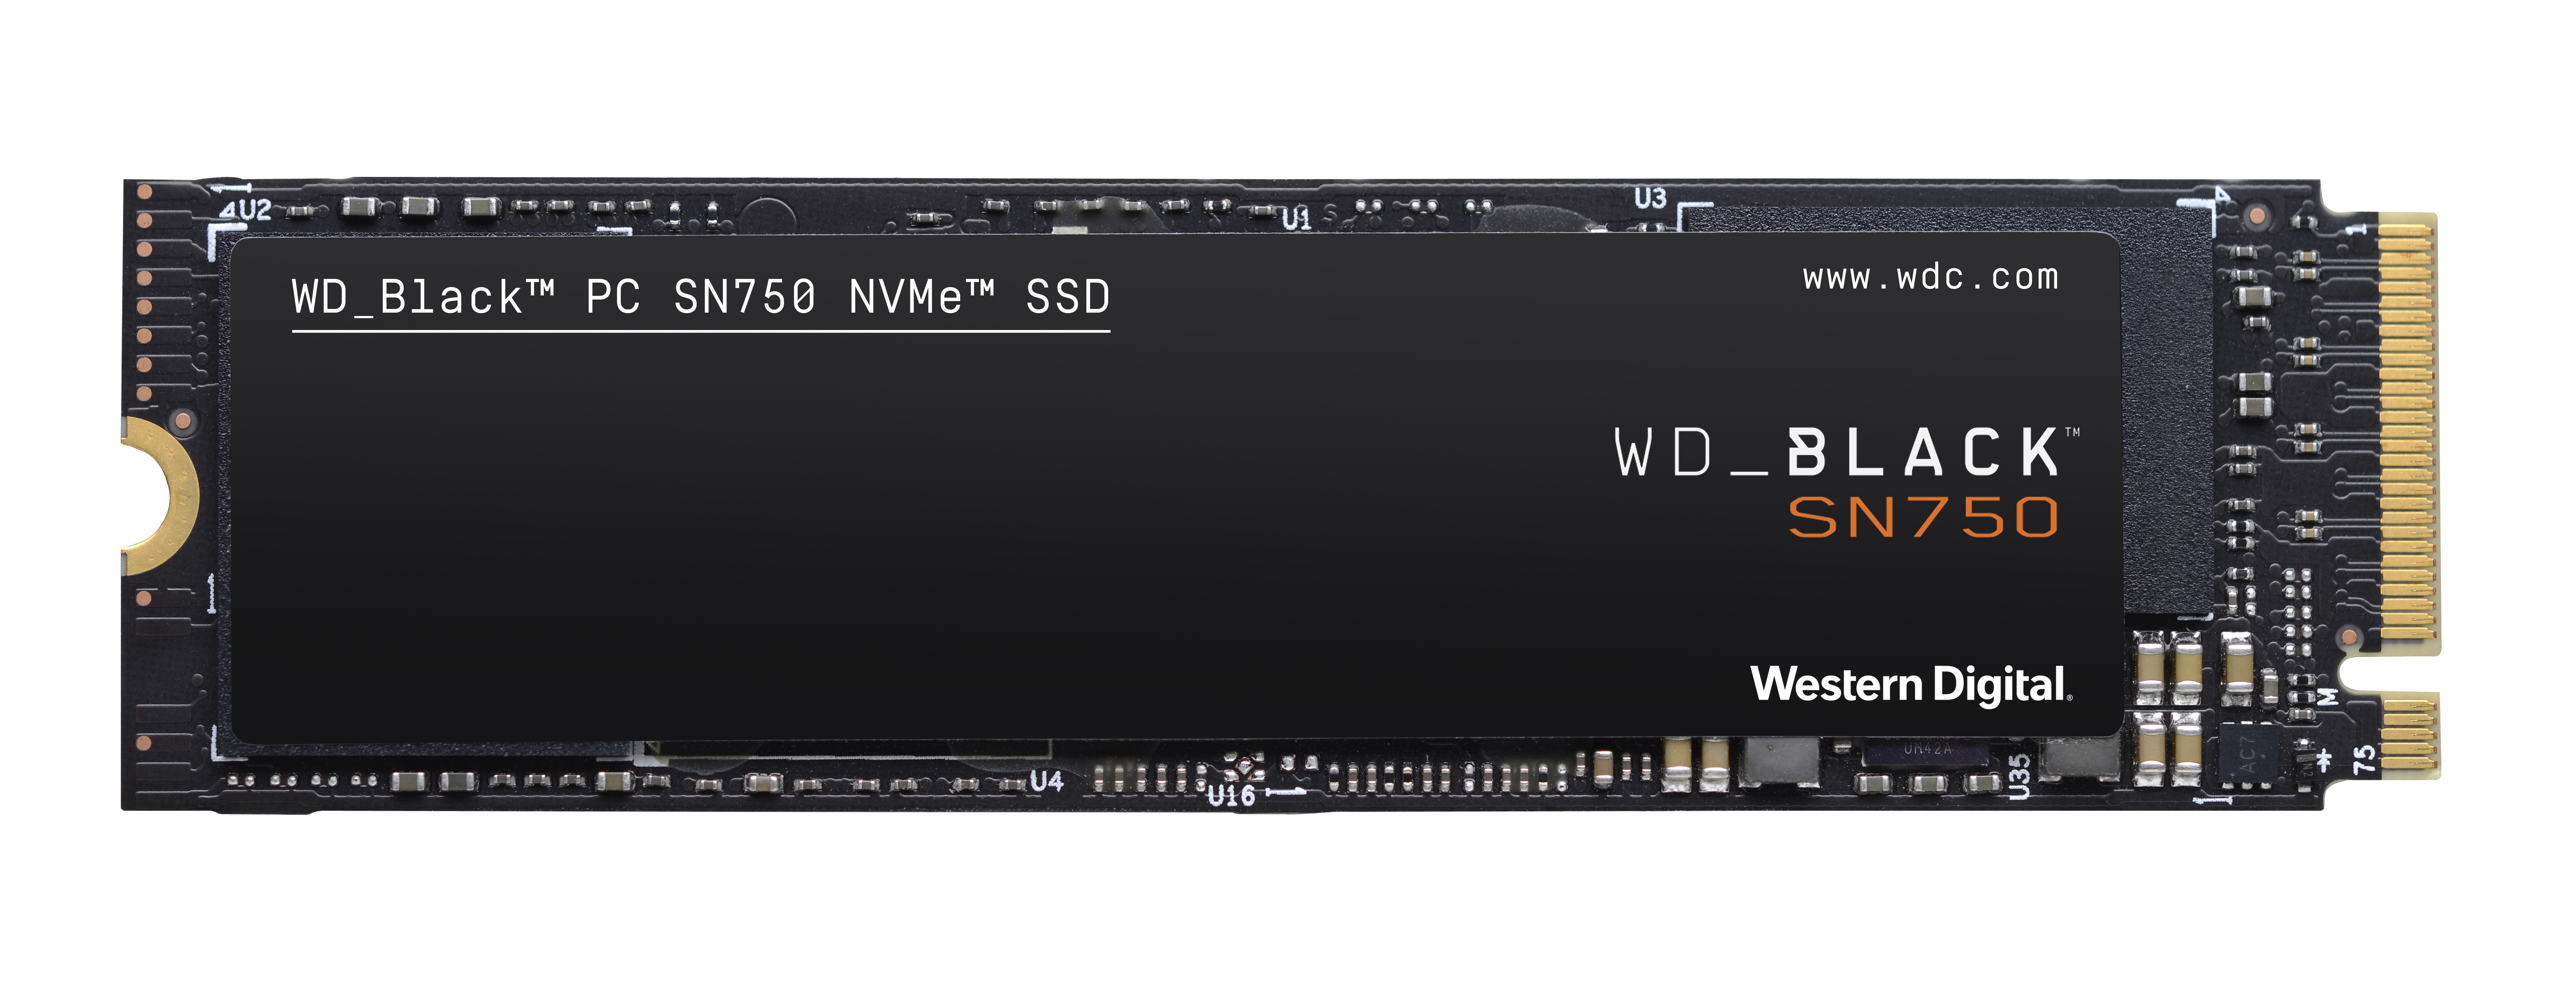 GB 250 SN750 SSD, Interner NVMe™ Speicher, M.2, intern Speicher WD_BLACK